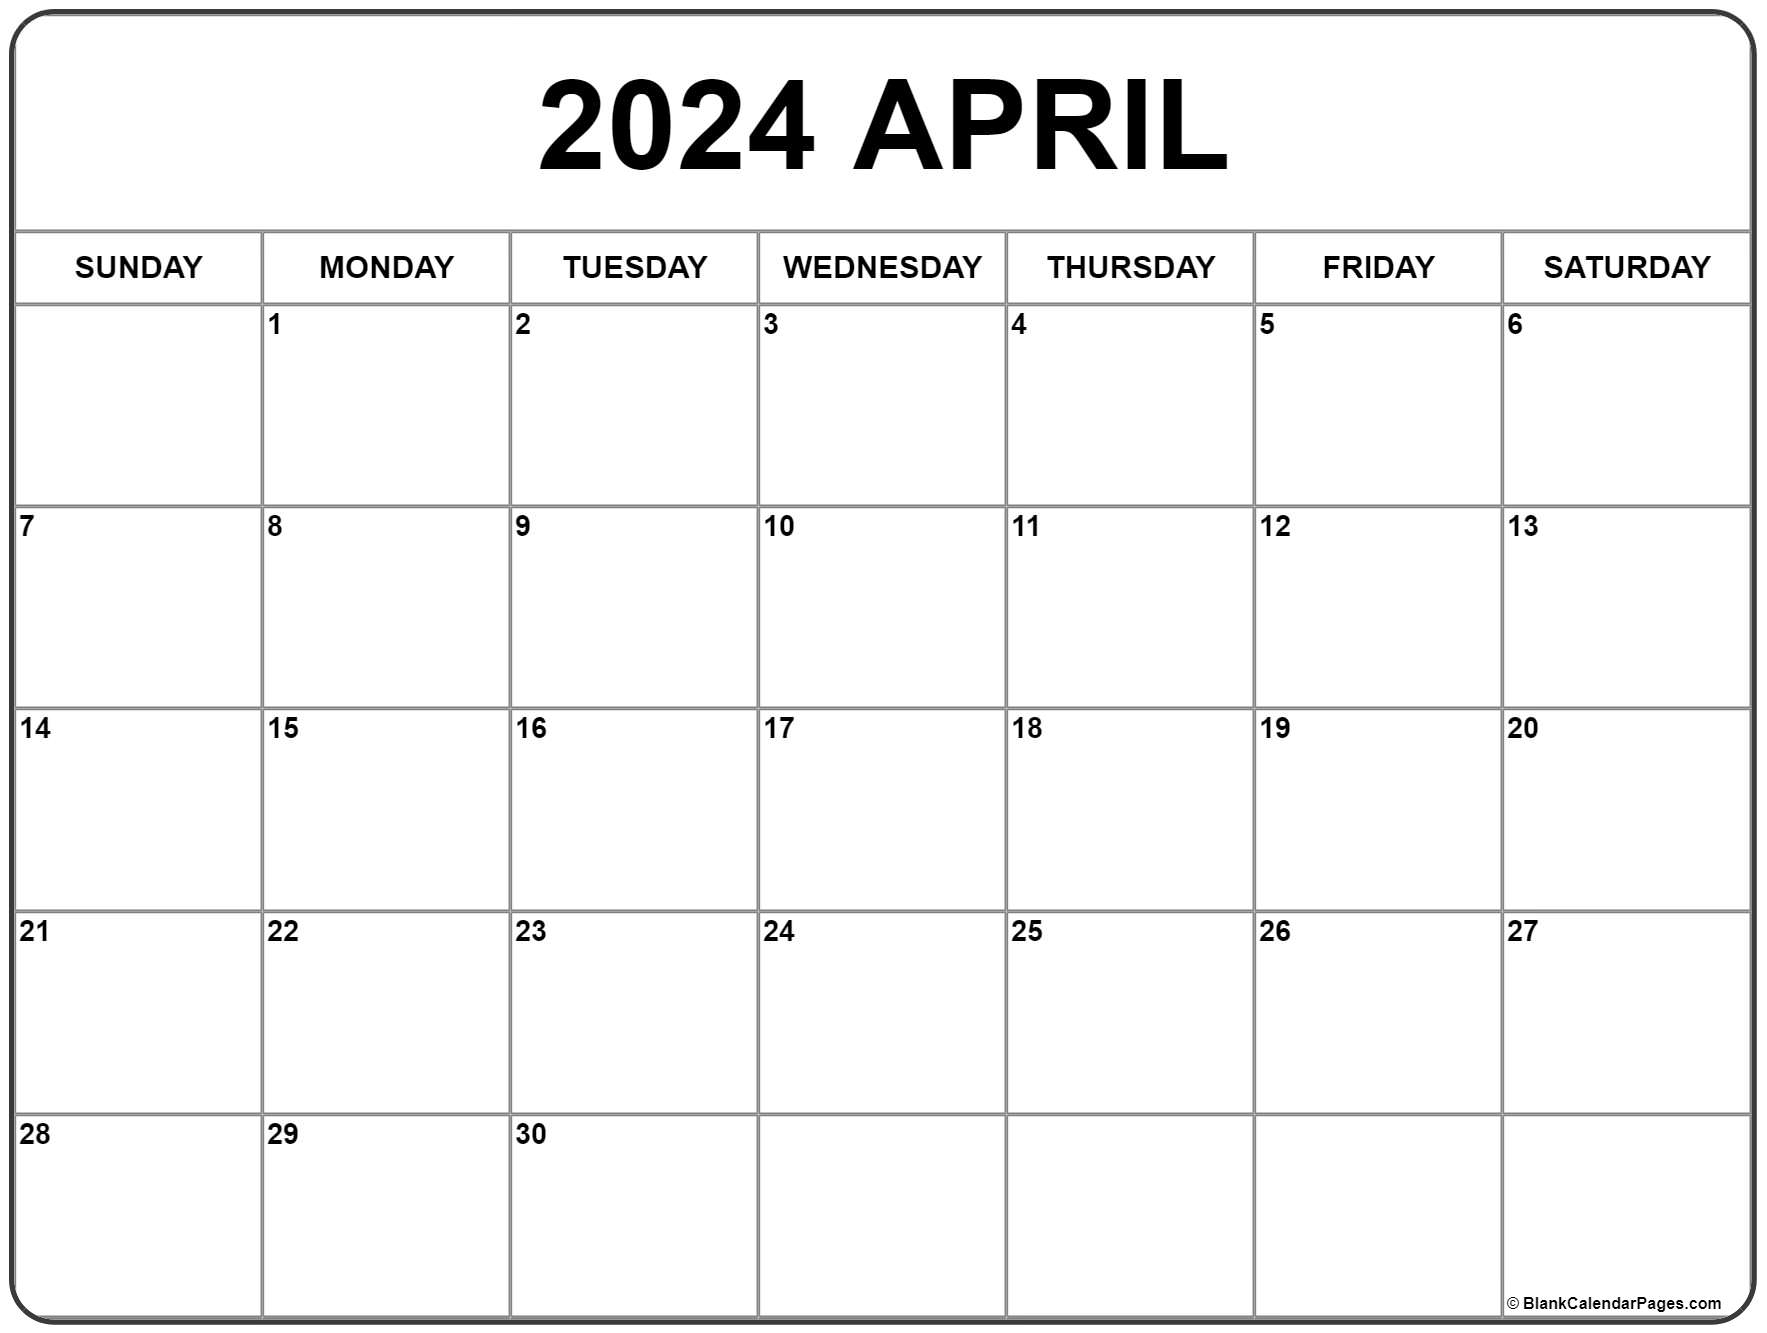 April 2024 Calendar | Free Printable Calendar for Free Printable April 2024 Calendar Page